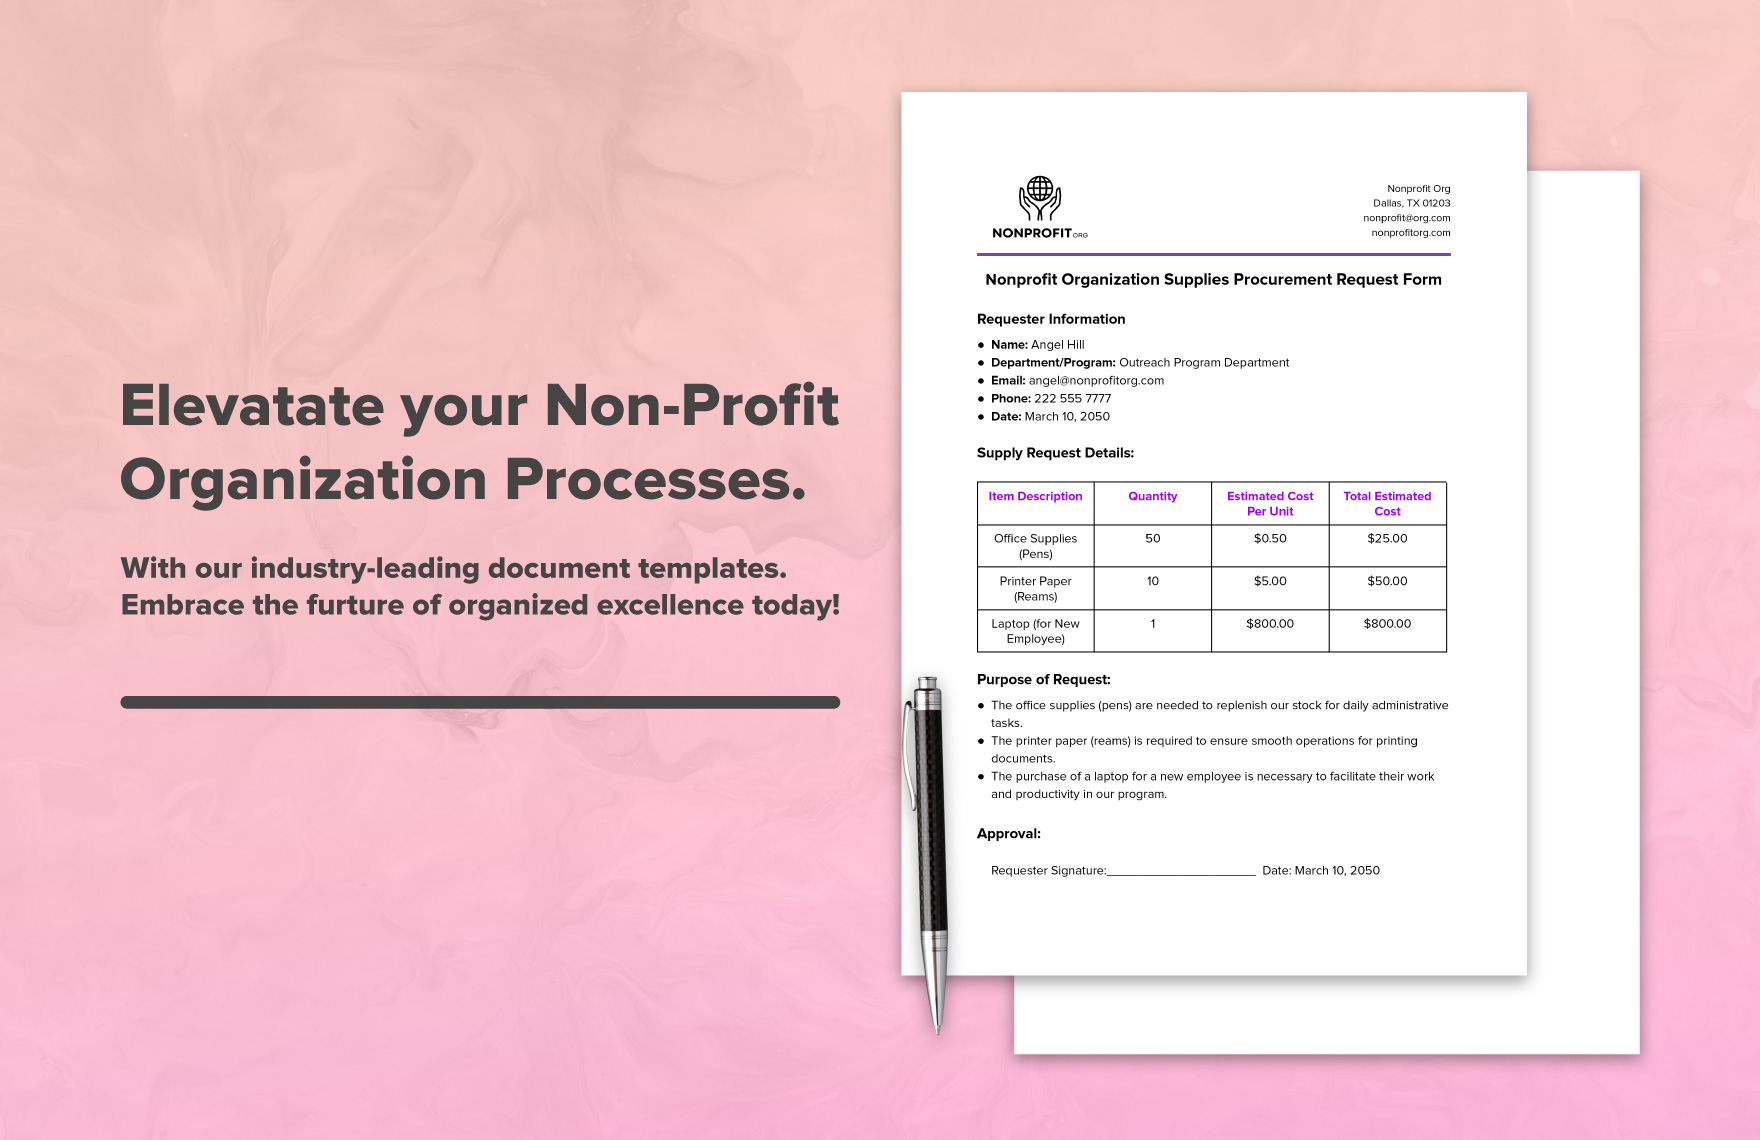 Nonprofit Organization Supplies Procurement Request Form Template